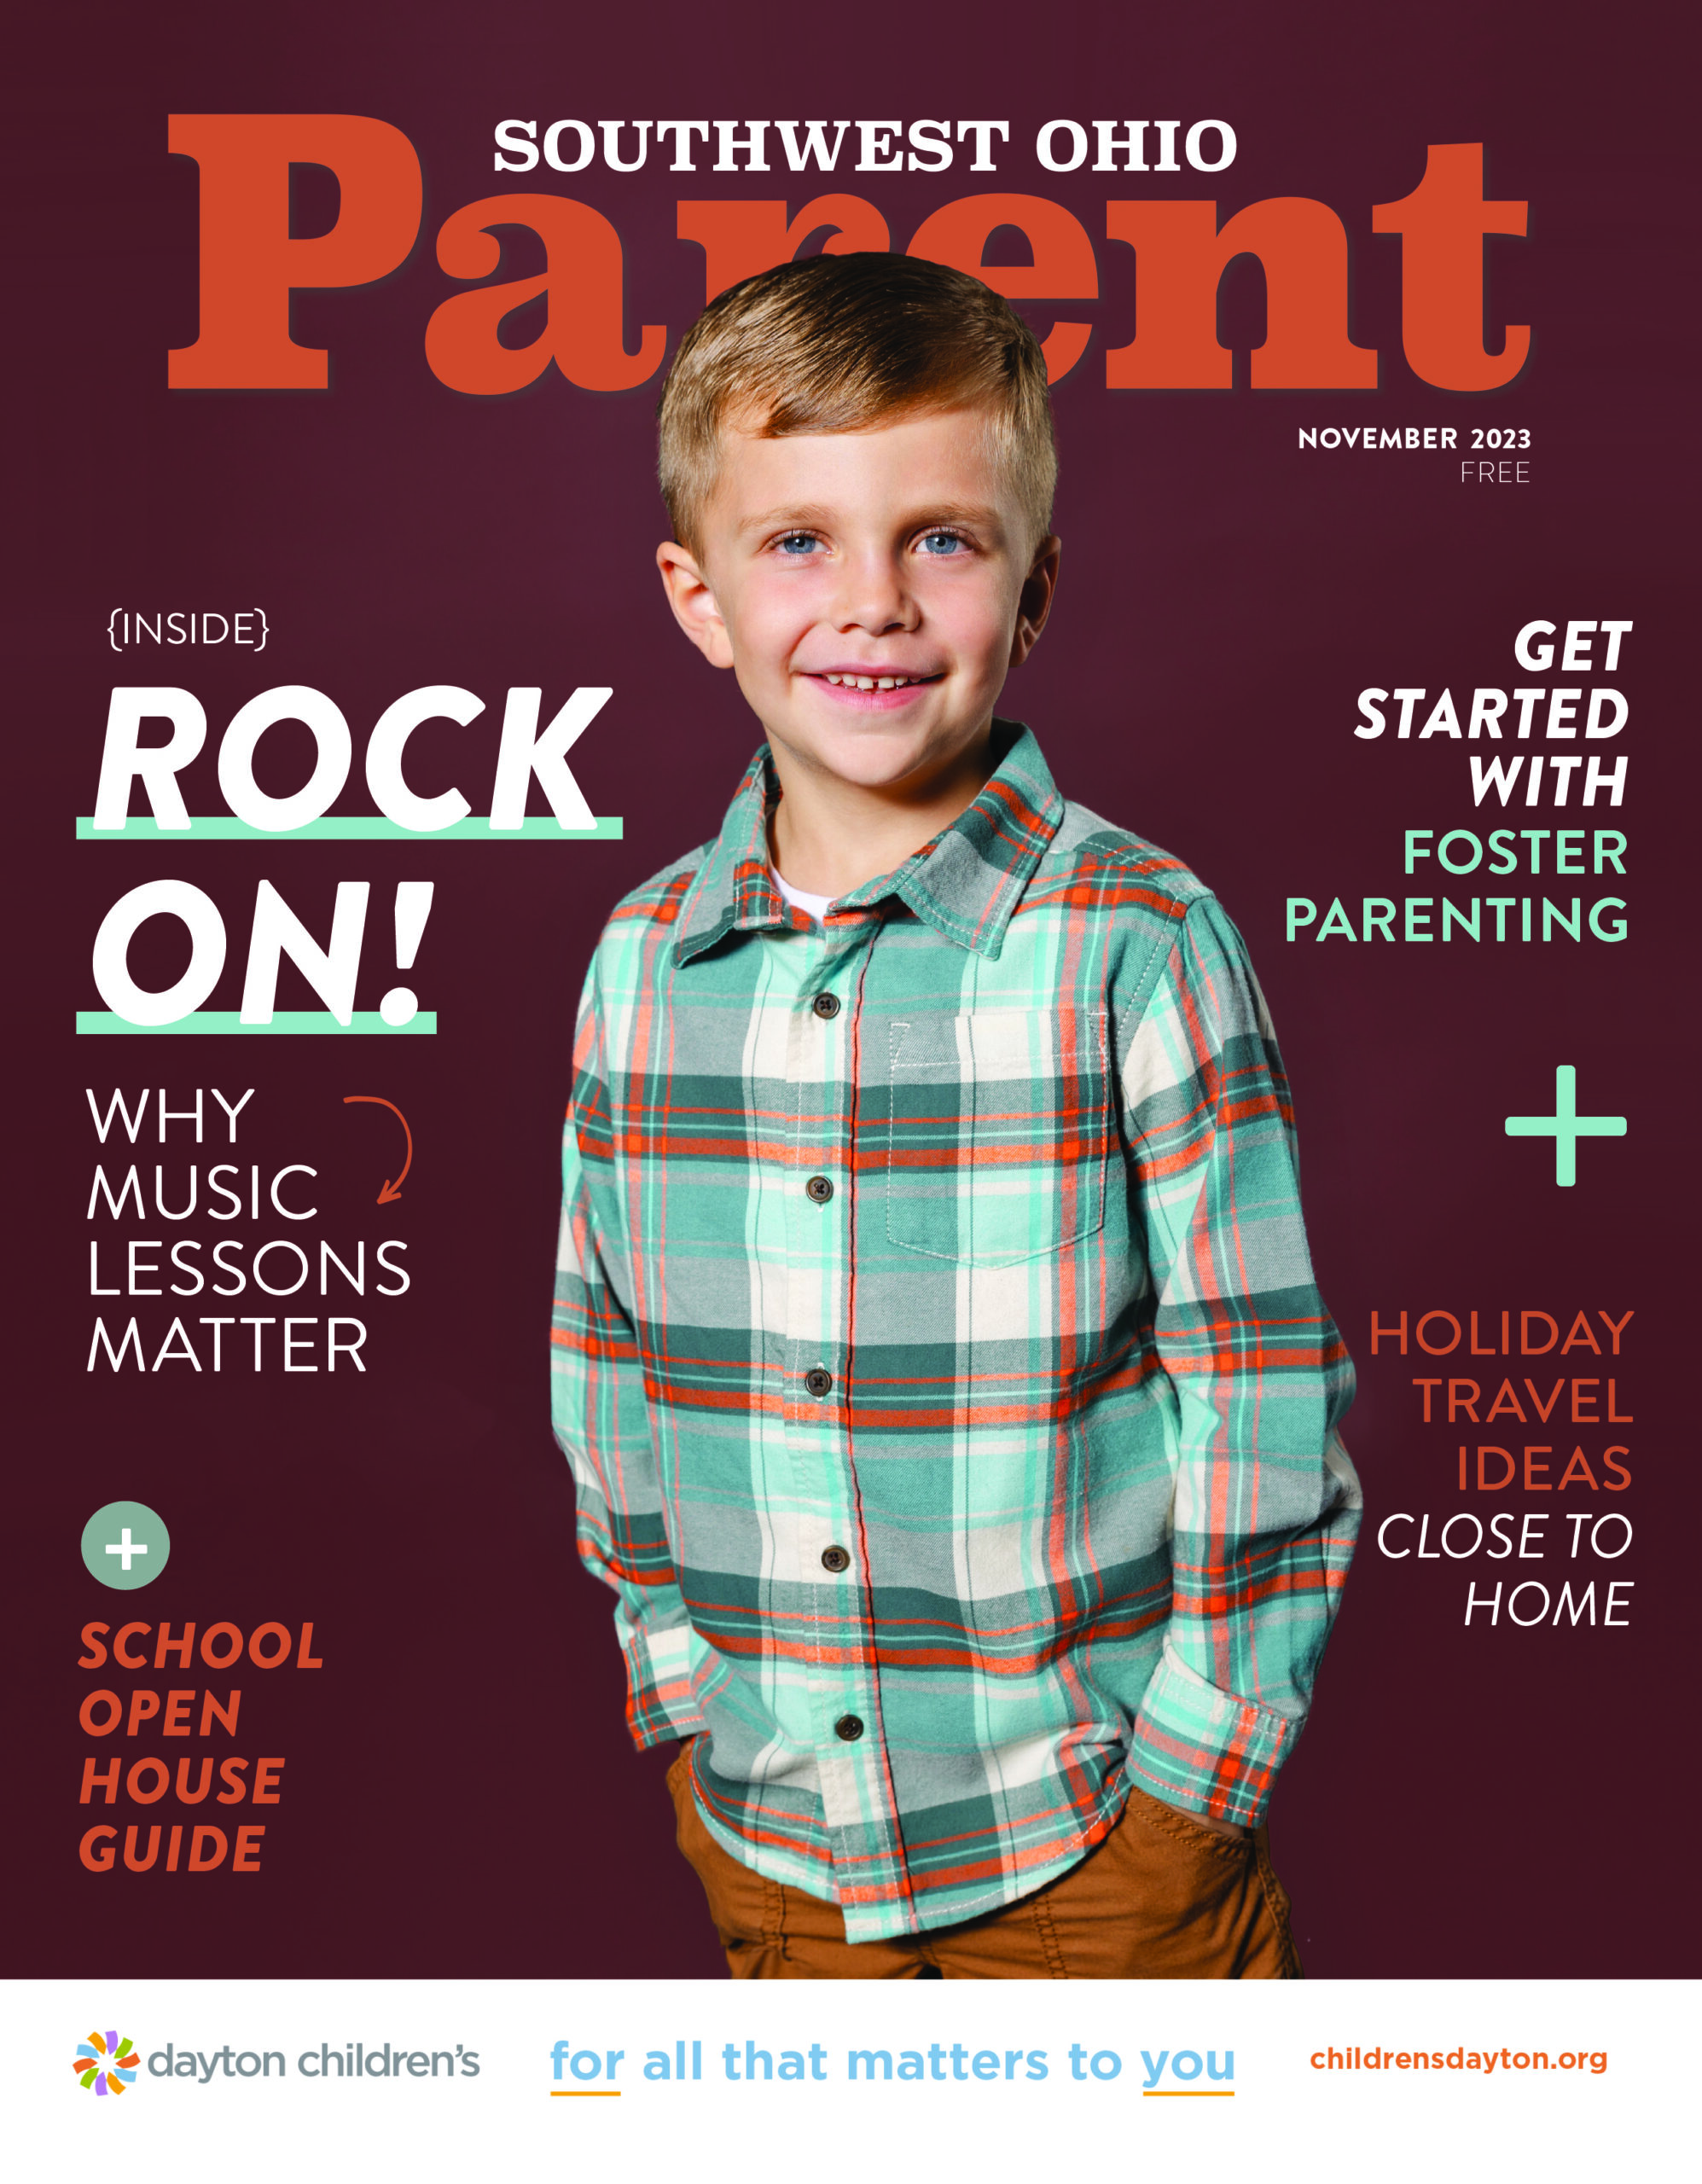 Best Art Studios for Kids in Cincinnati - Southwest Ohio Parent Magazine